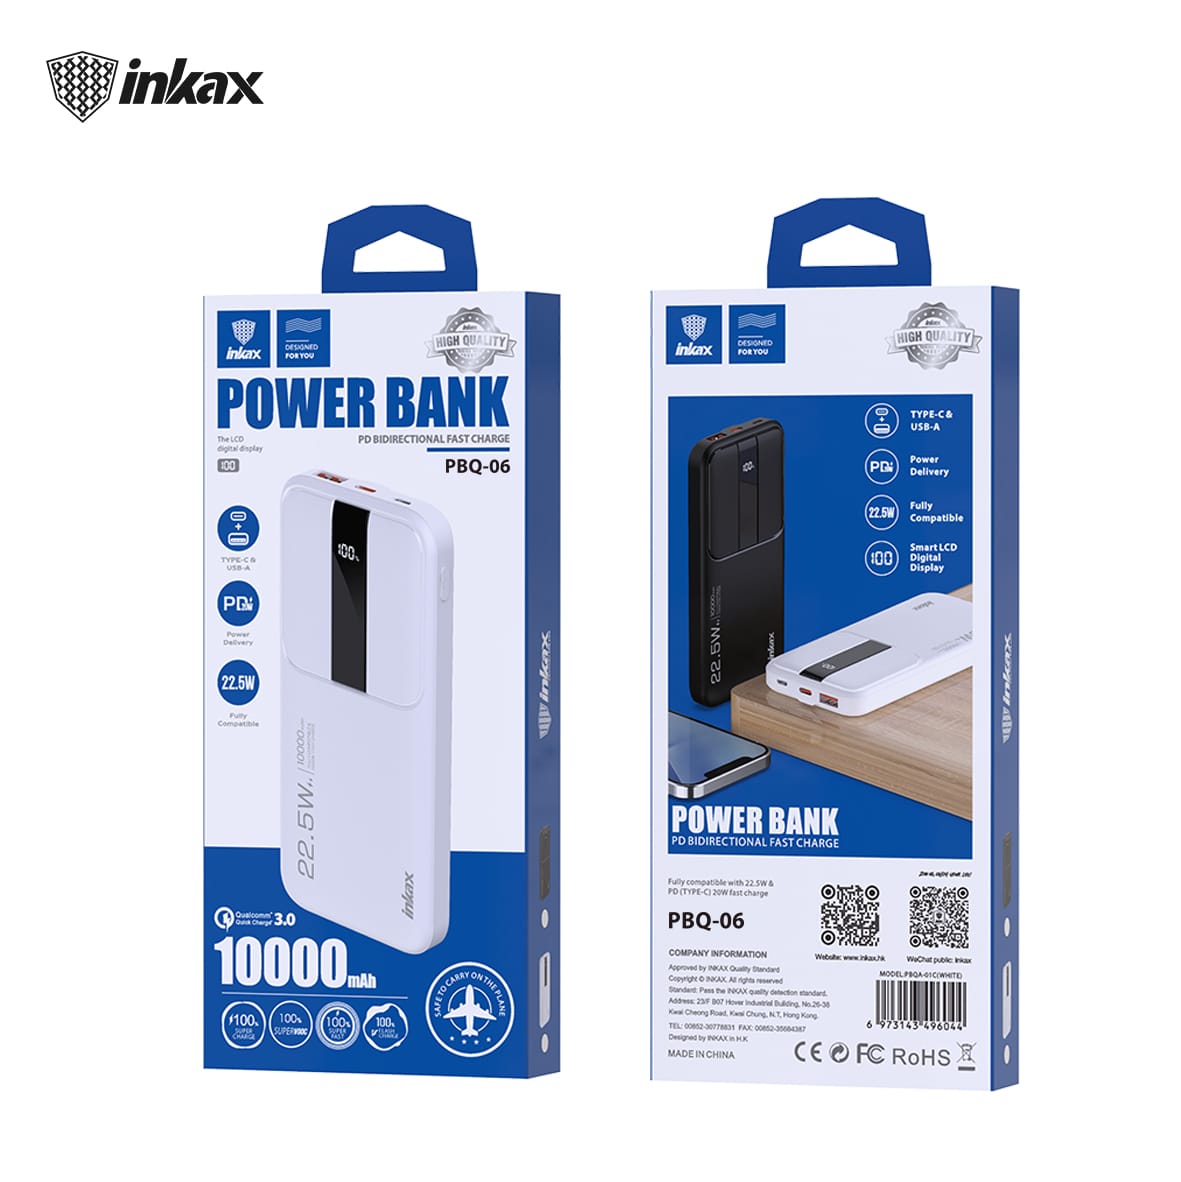 Inkax 10000mAh Power Bank - White